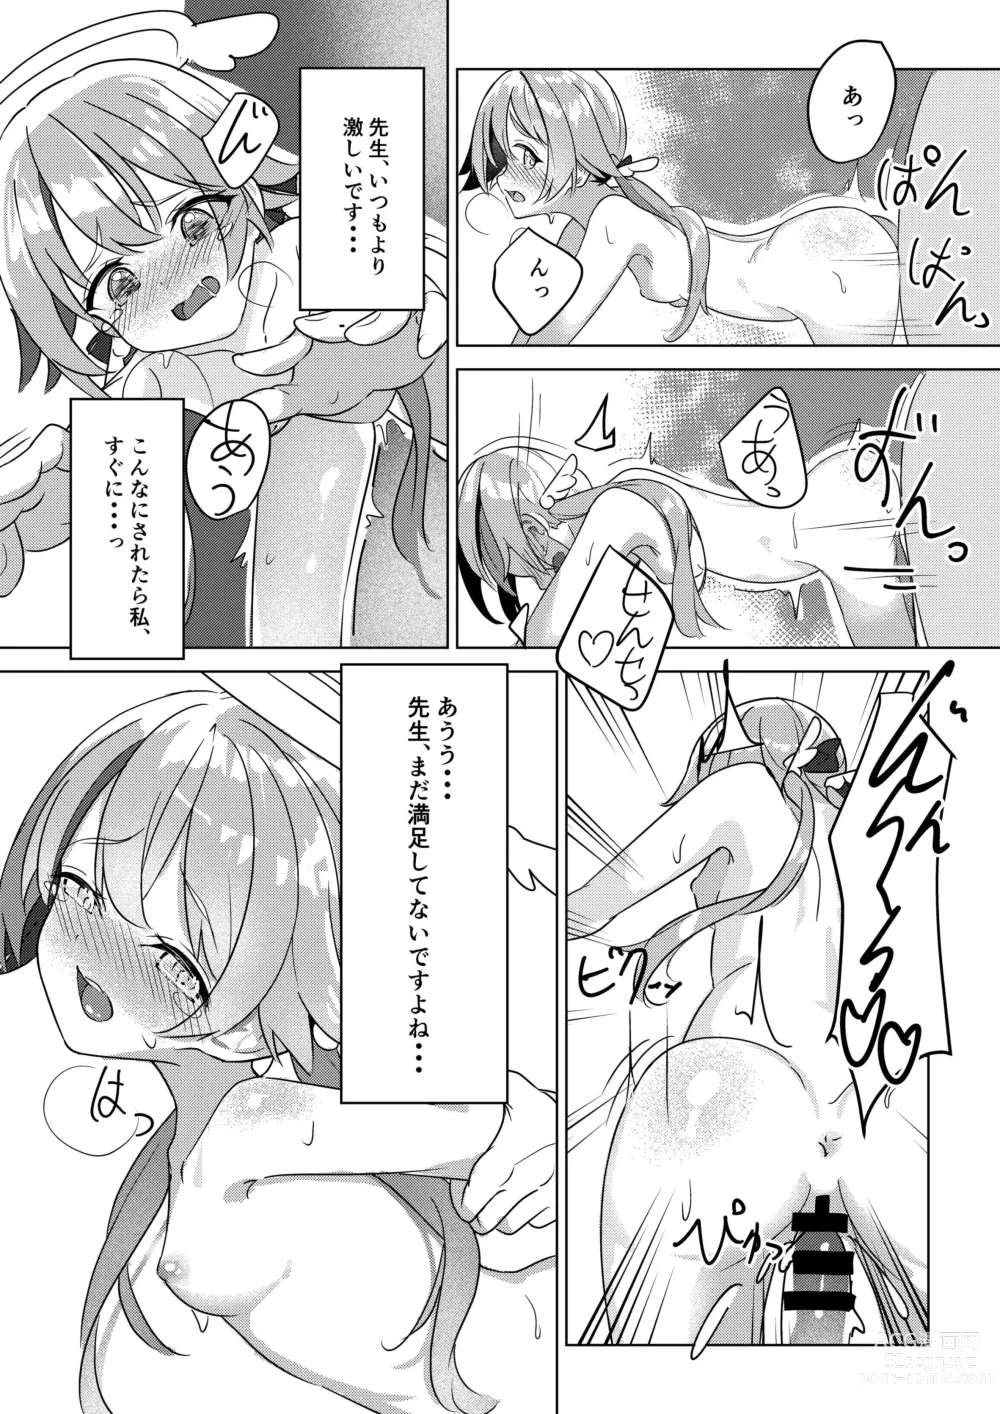 Page 7 of doujinshi Nicchoku no Hifumi to H